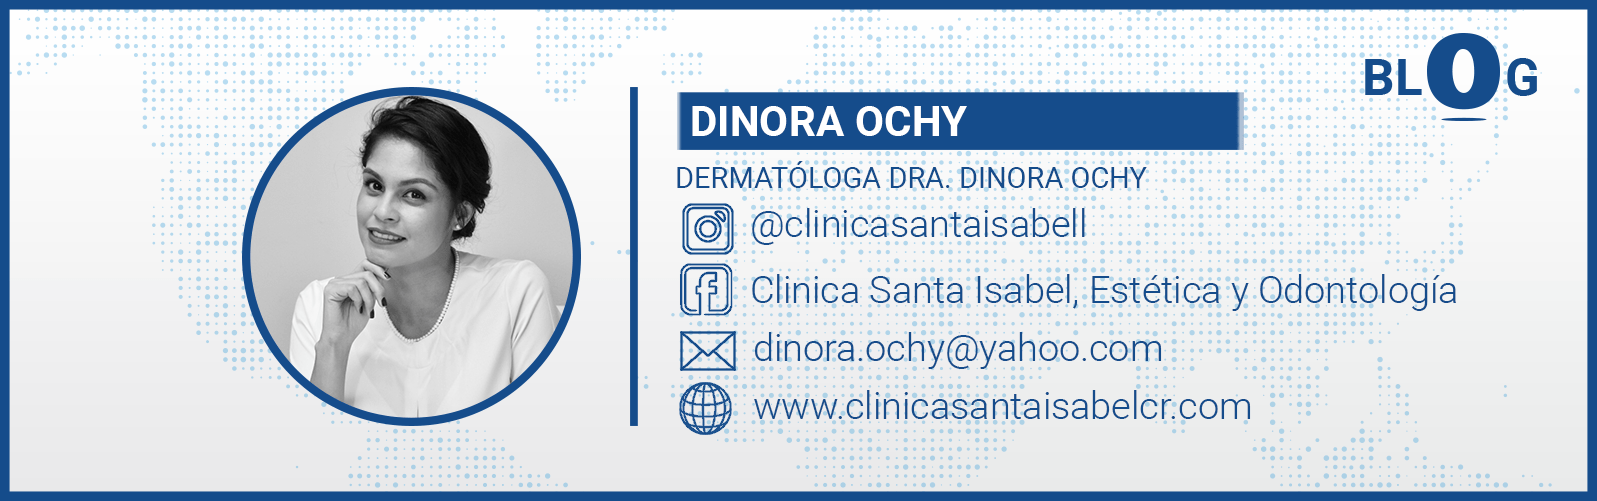 Dinora Ochy